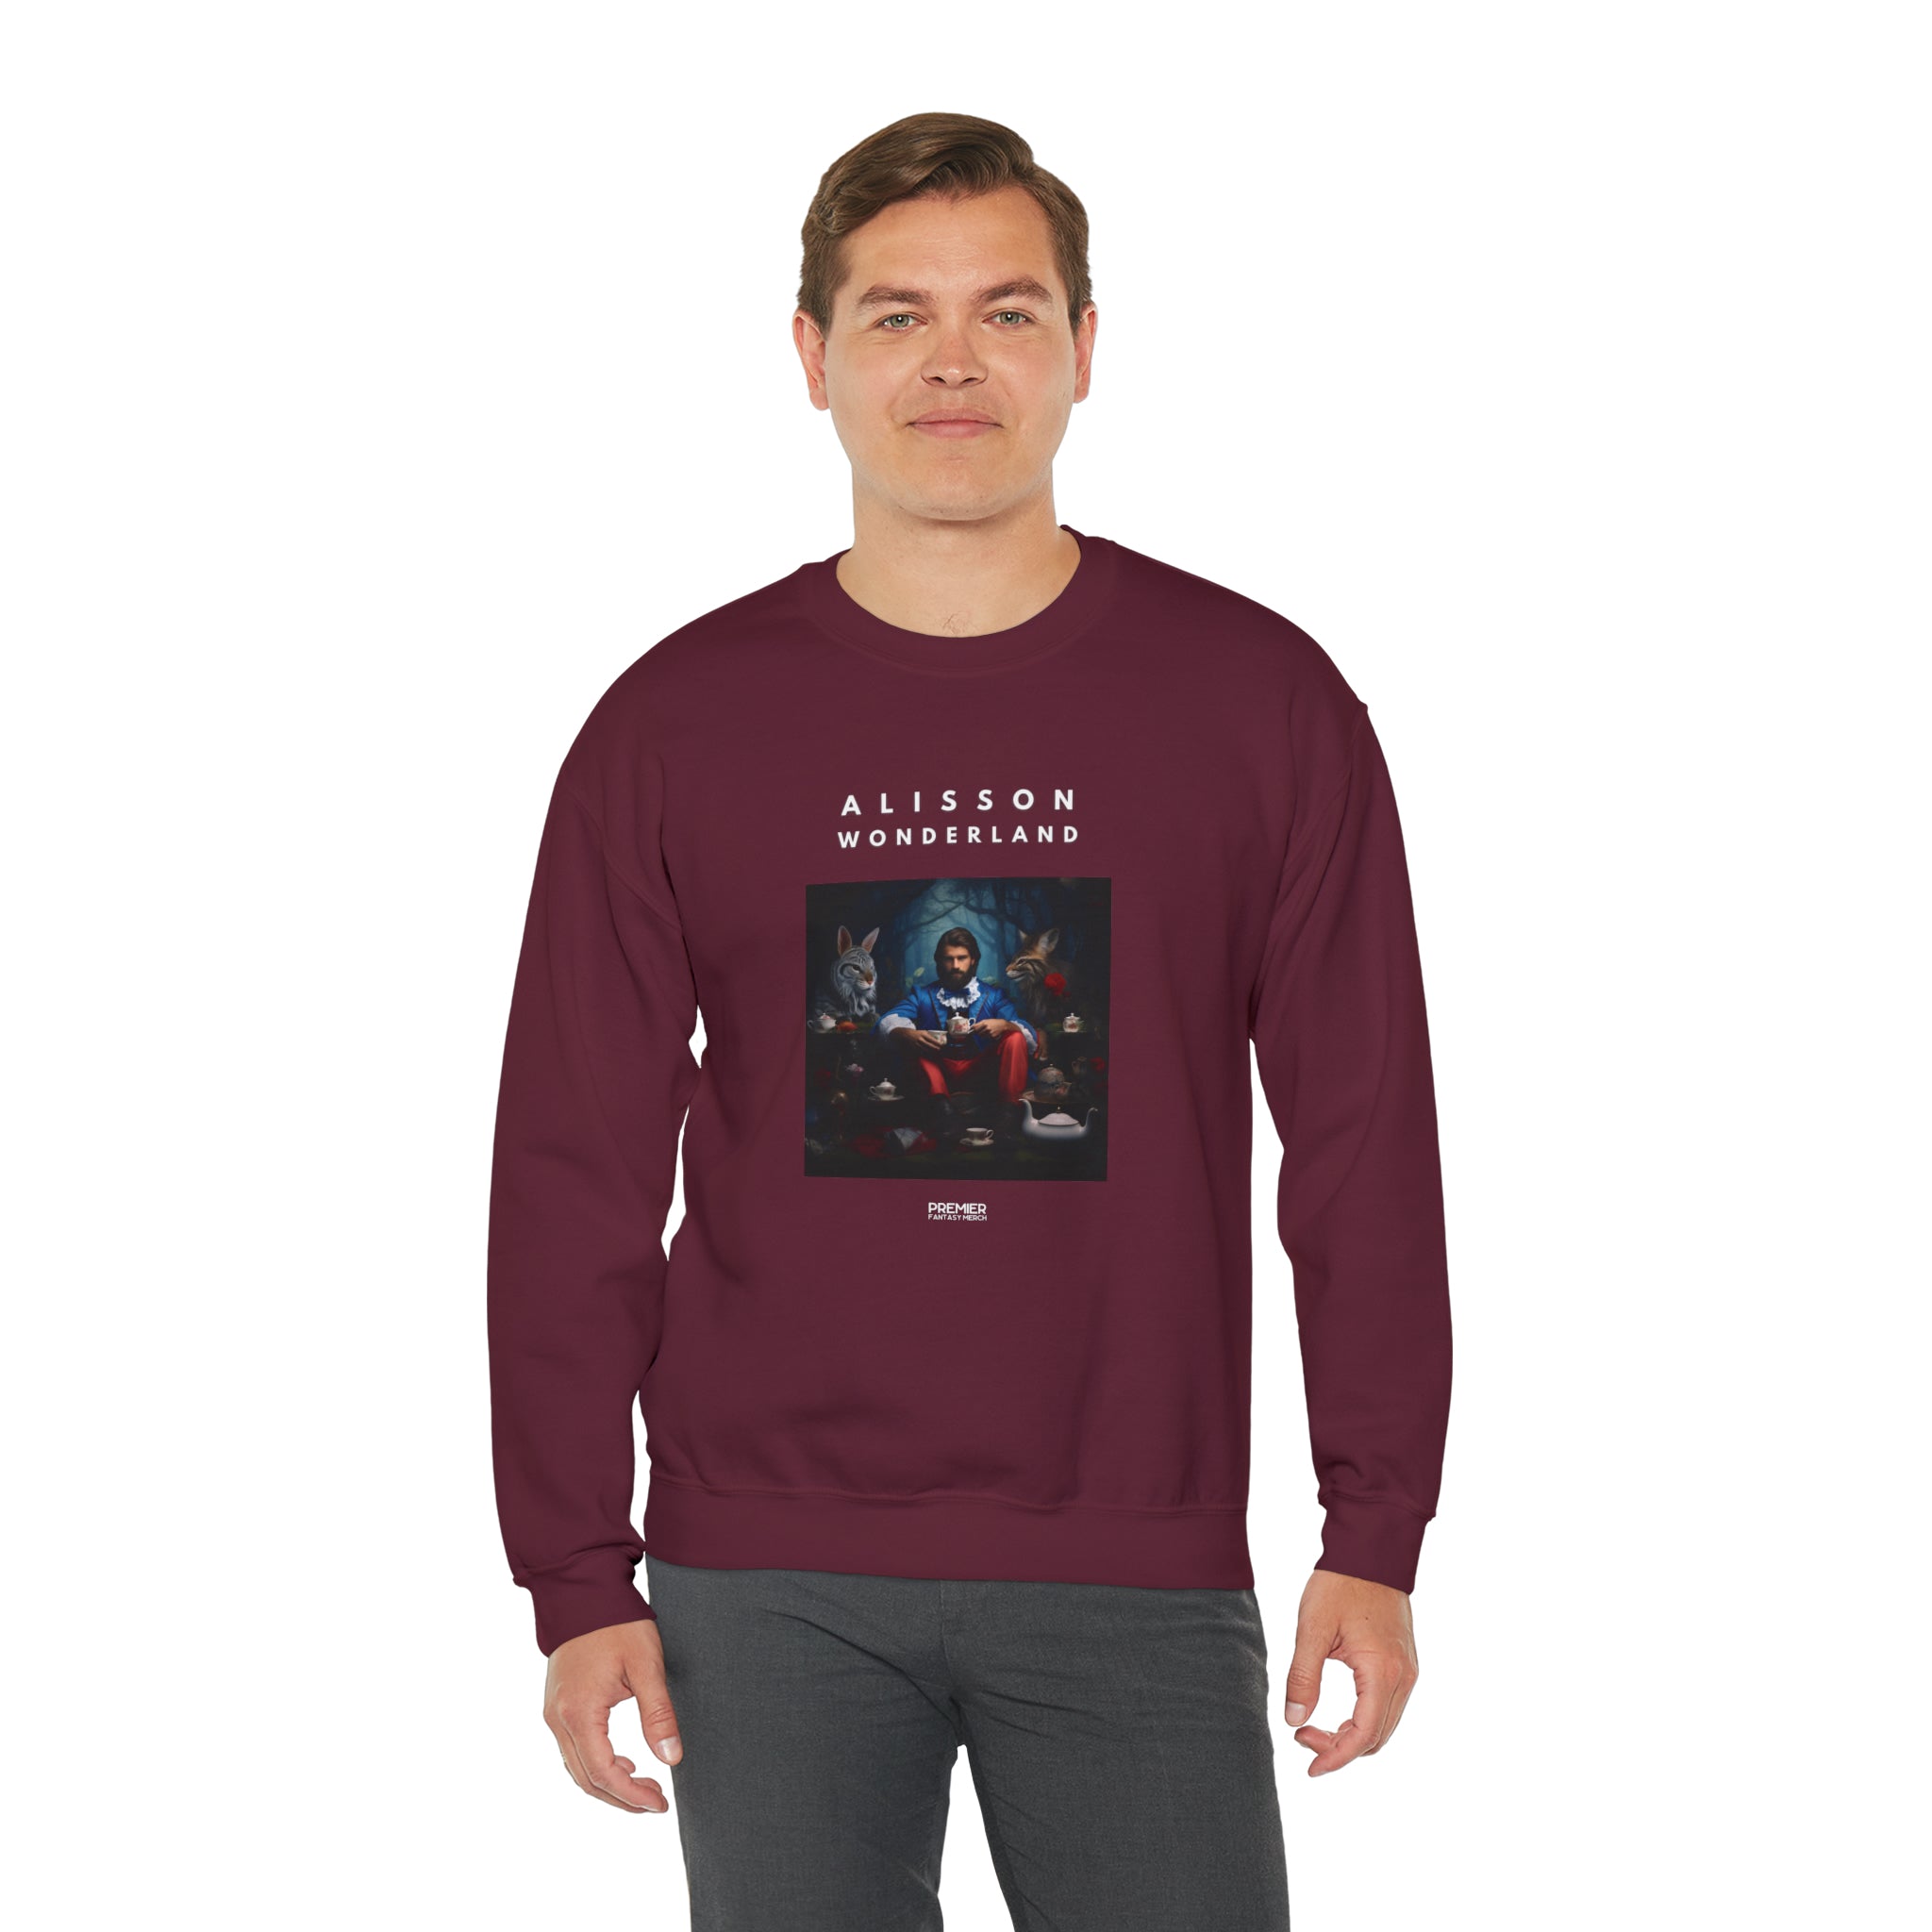 Alisson Wonderland Sweatshirt (Tea)